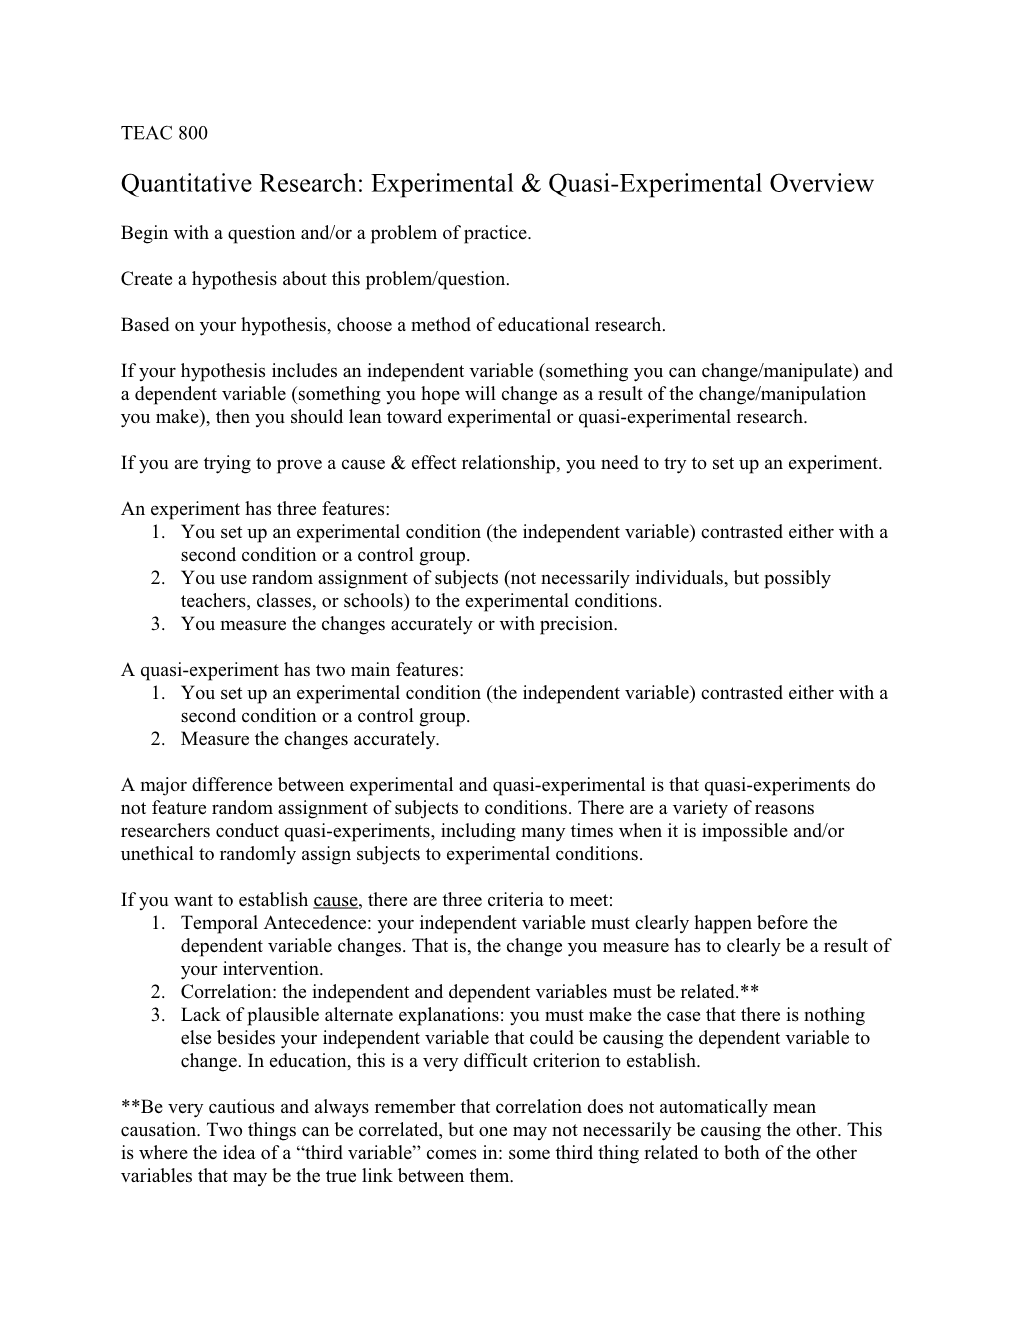 Quantitative Research: Experimental & Quasi-Experimental Overview